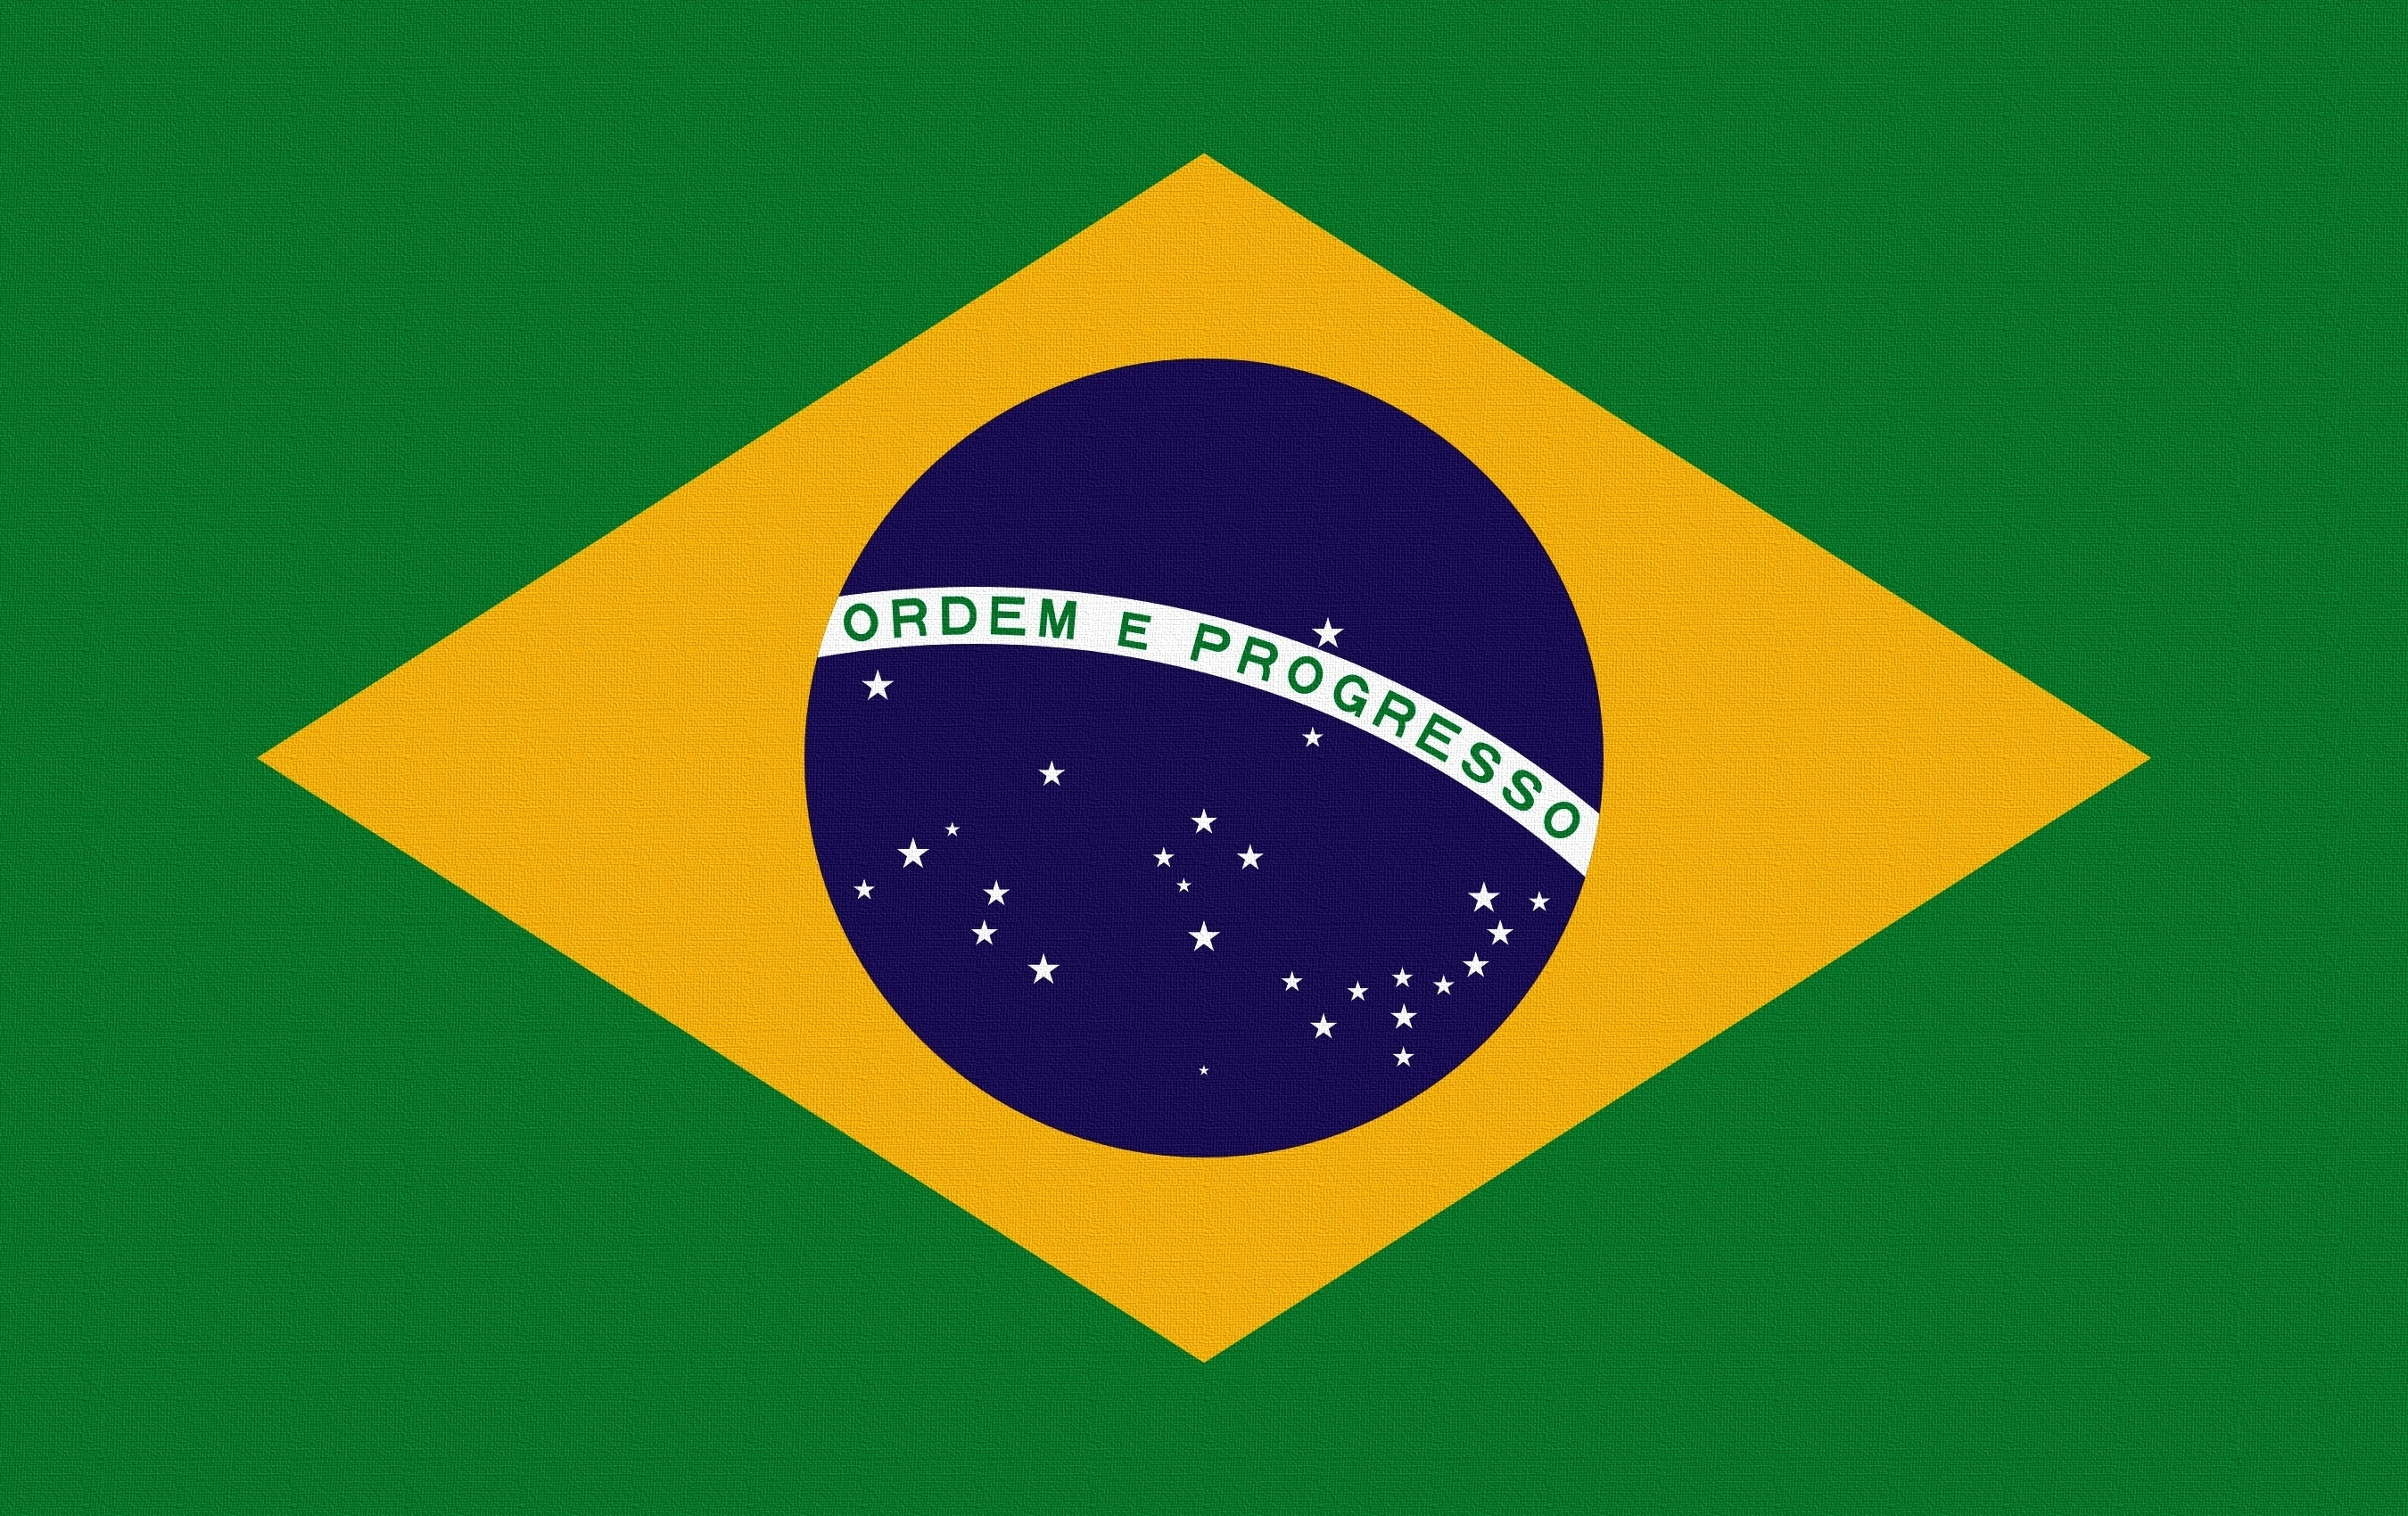 Скачать обои Бразилия на телефон бесплатно